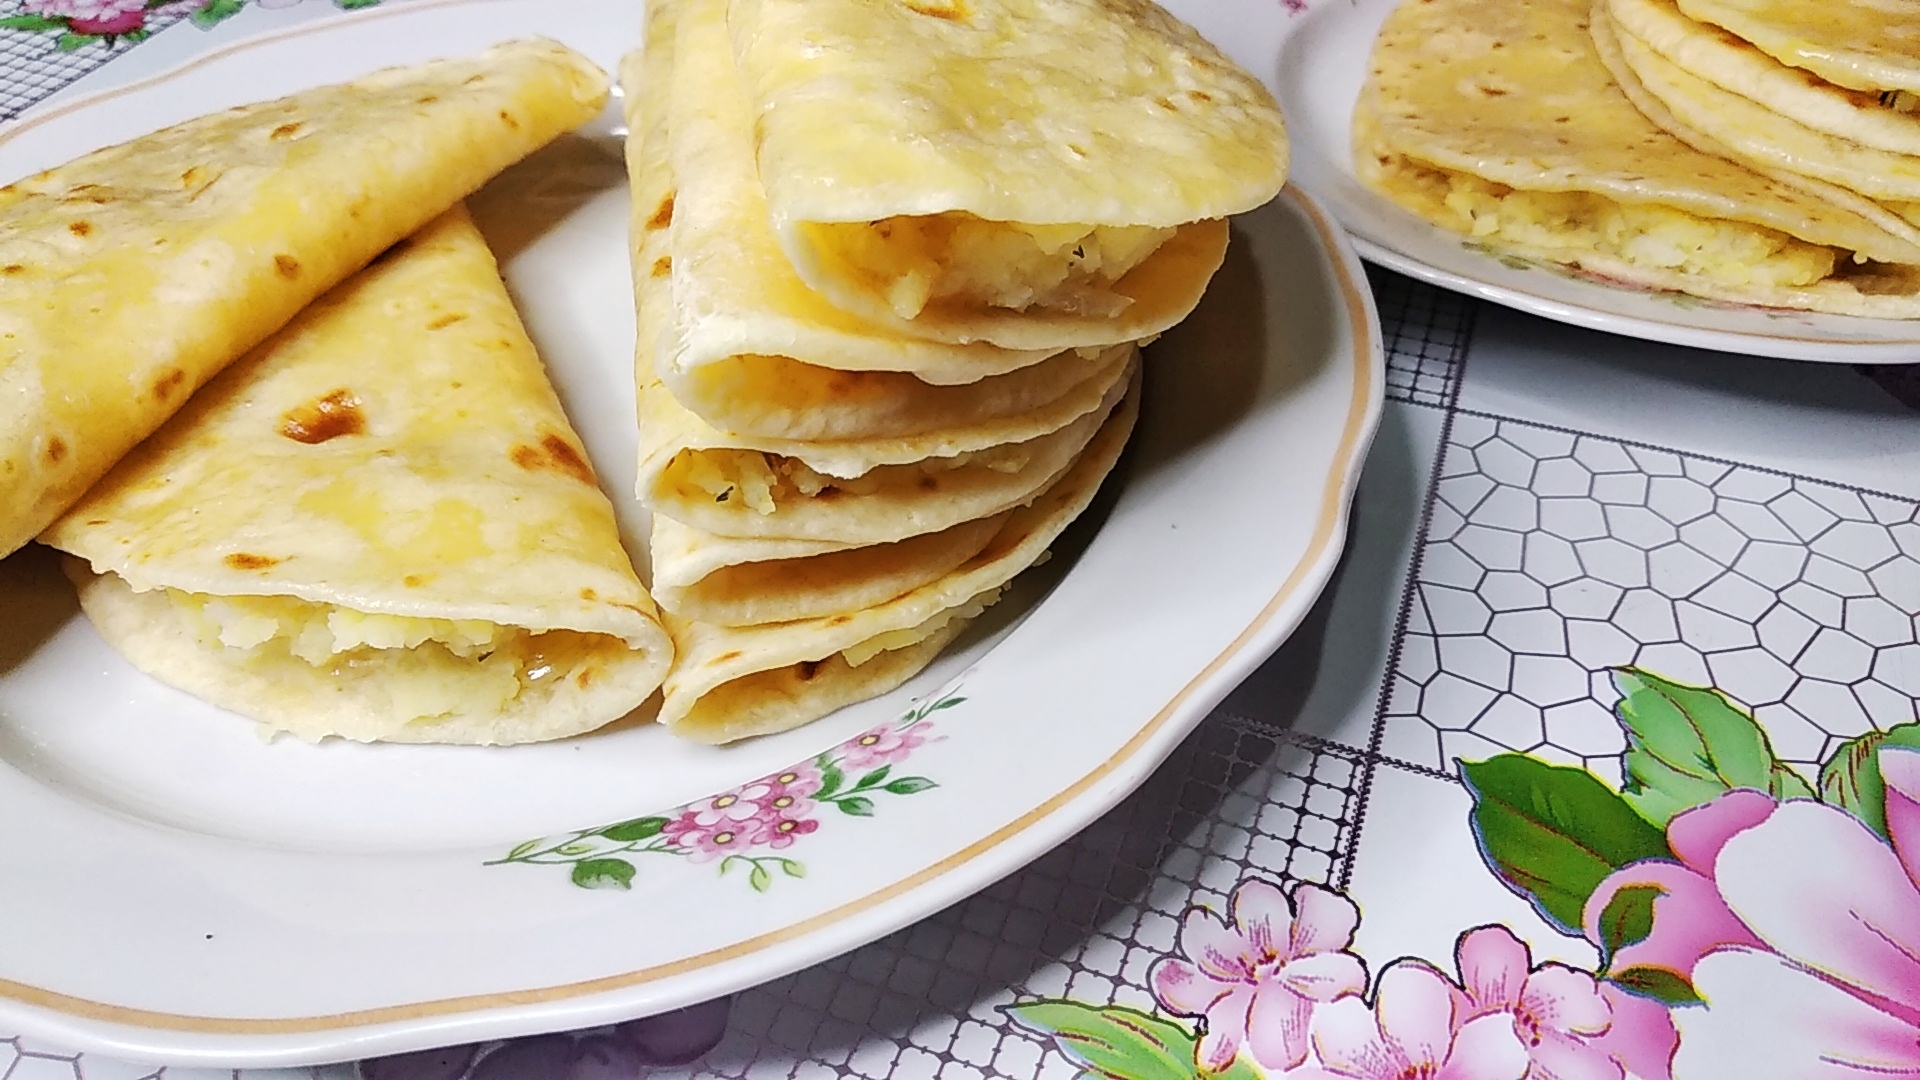 Рецепт татарского кыстыбый с картошкой рецепт